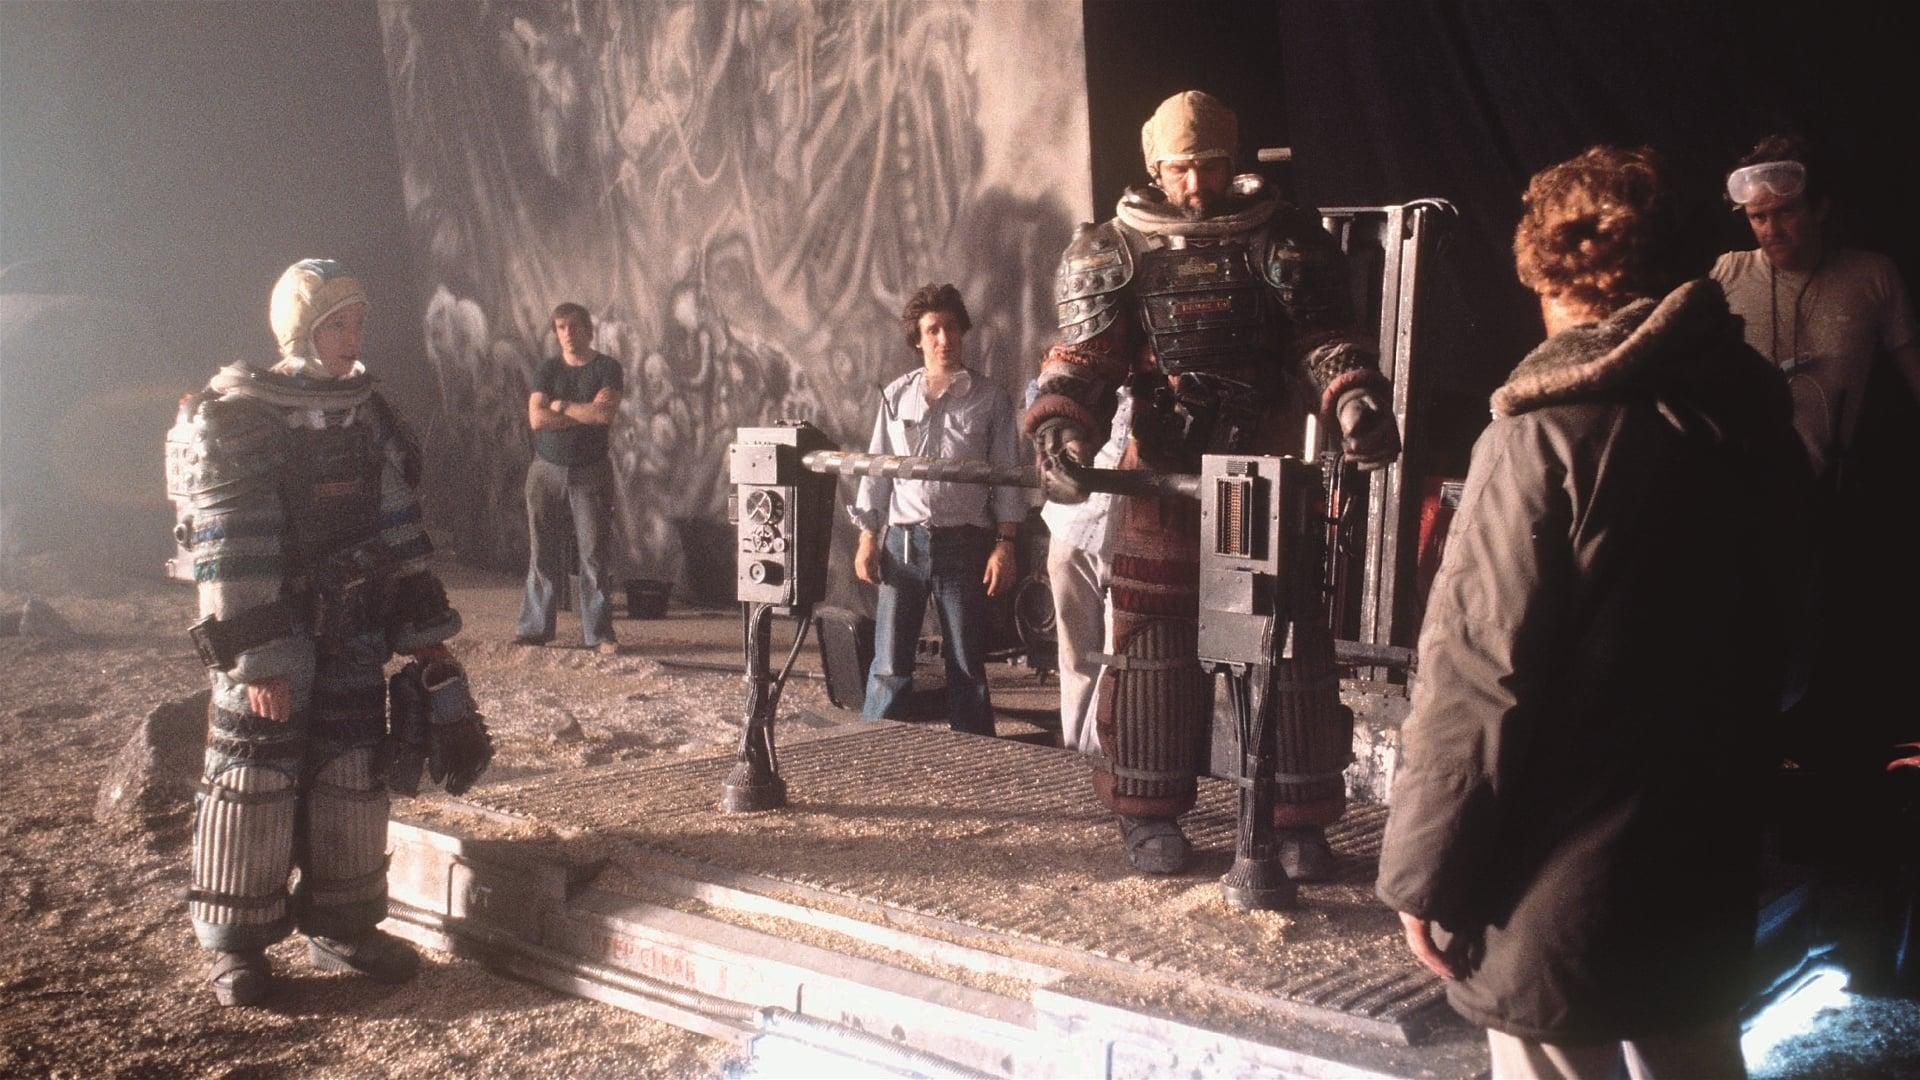 The Alien Legacy backdrop